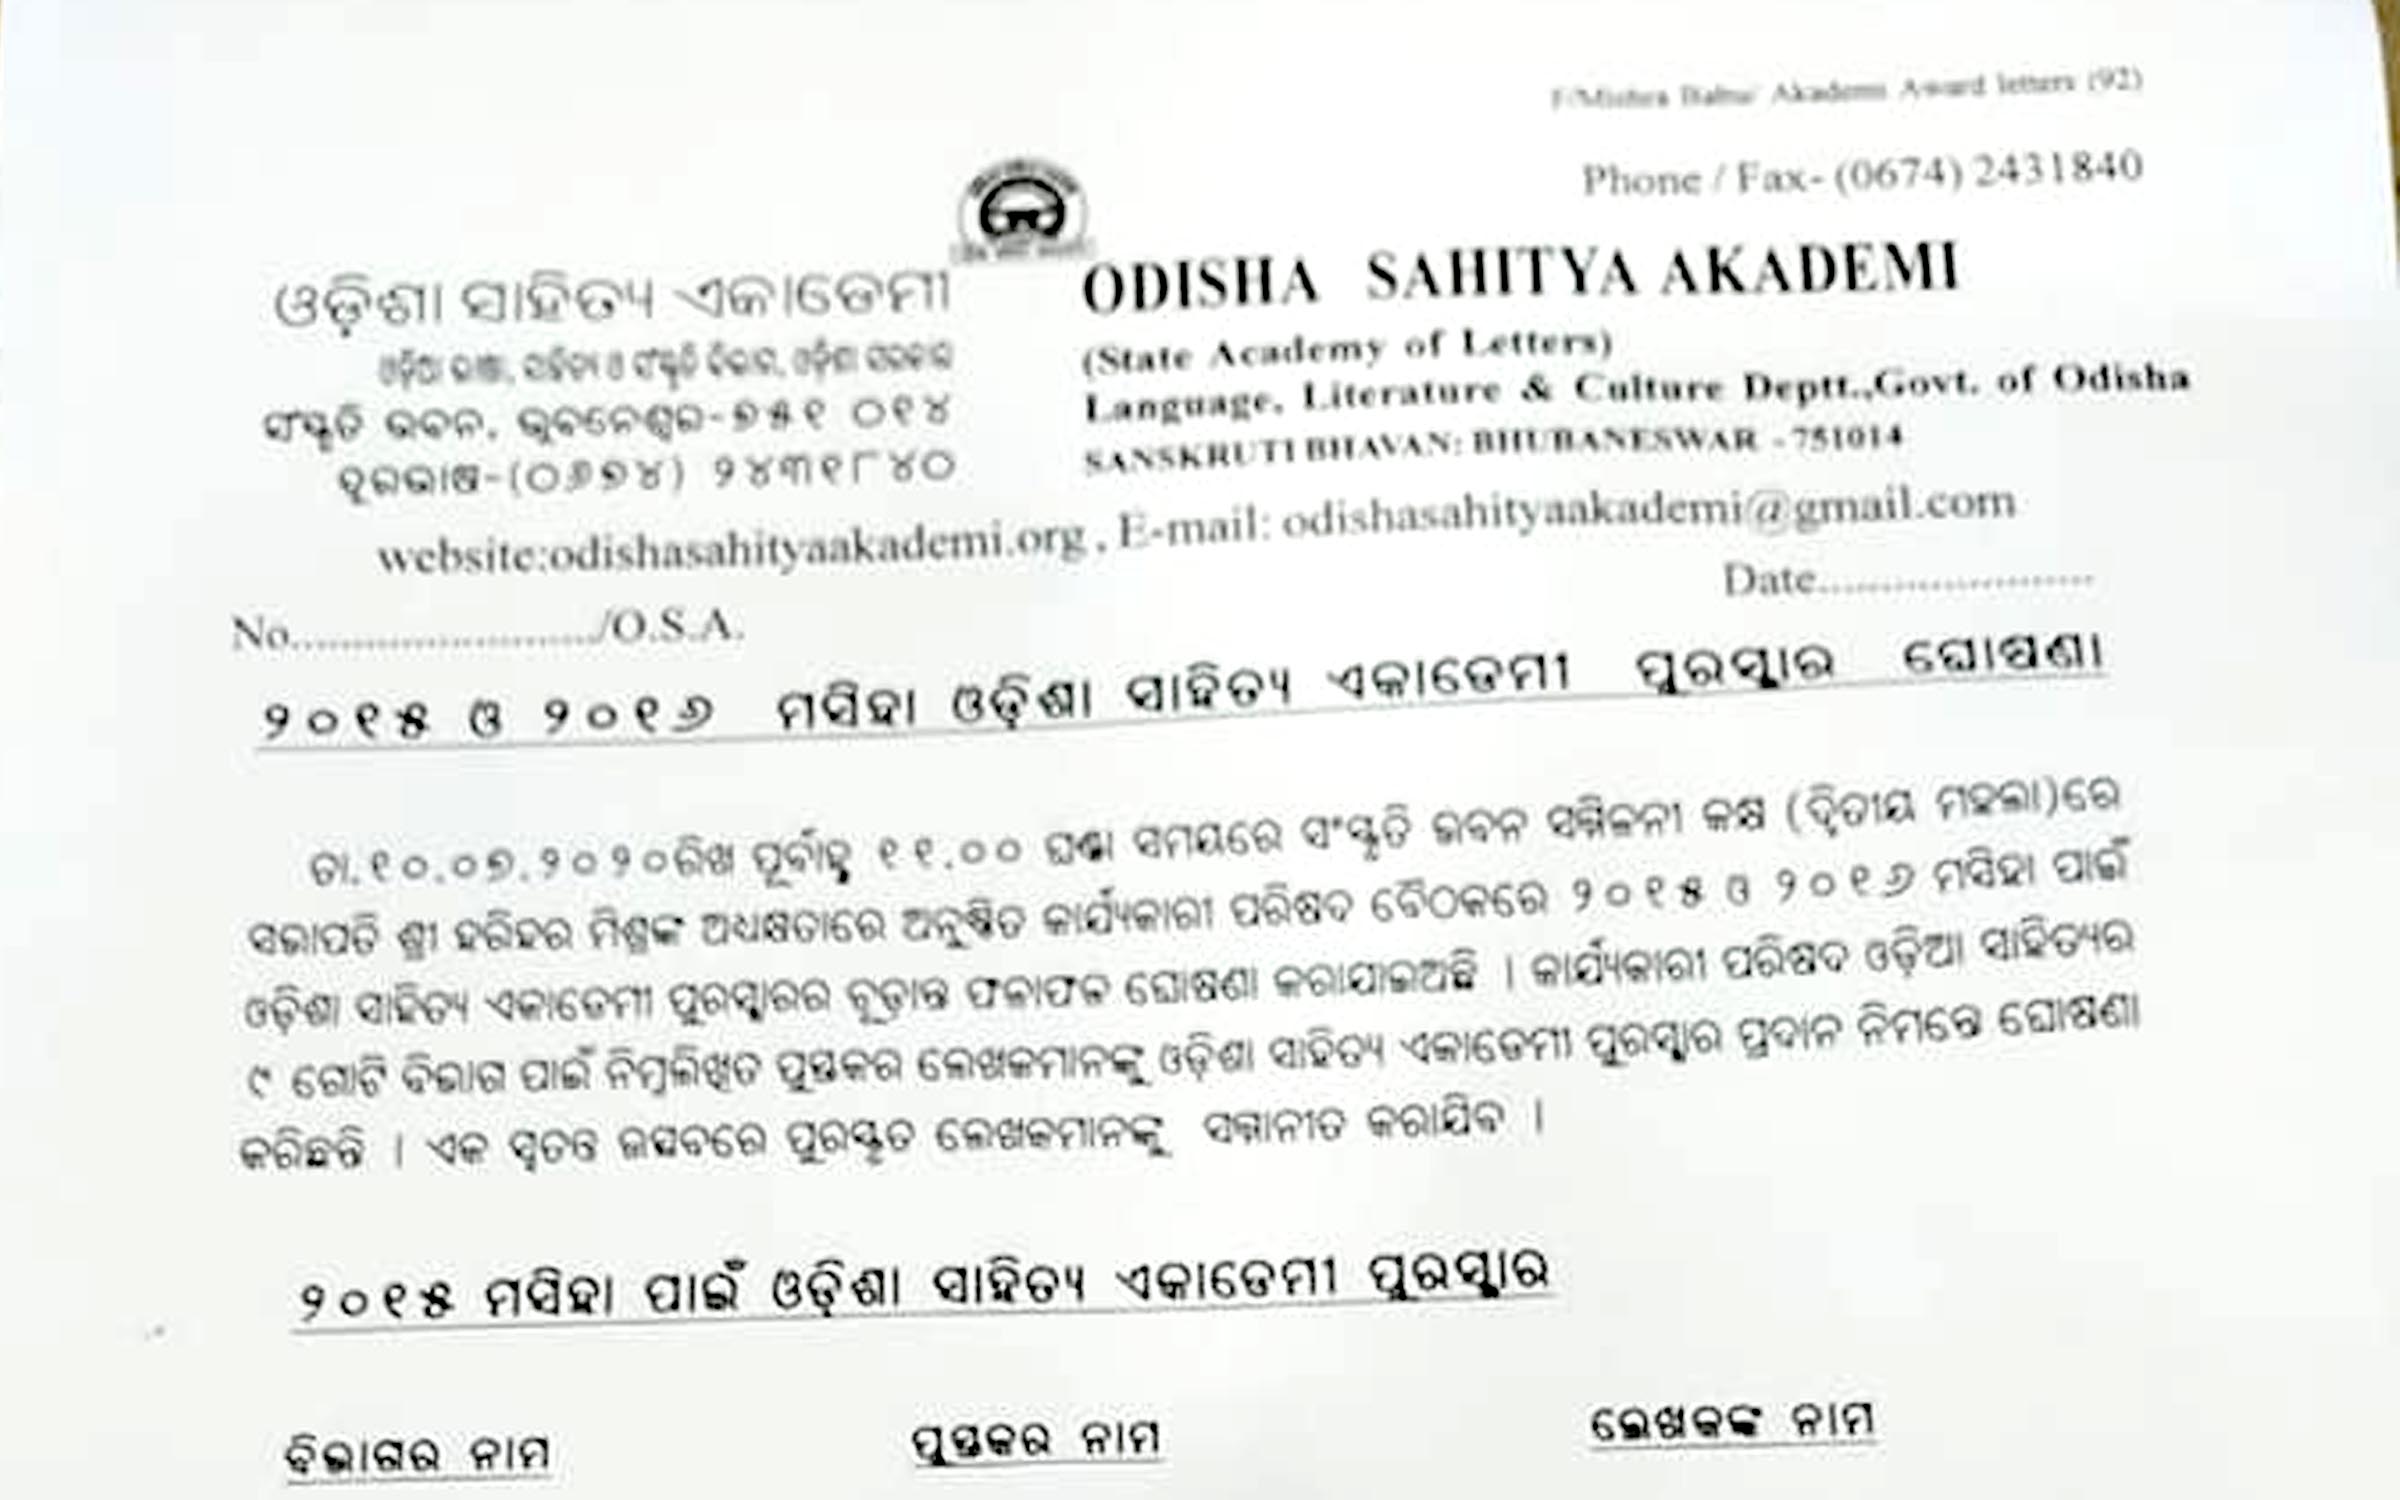 Odisha Sahitya Akademi Award fot 2015 and 2016